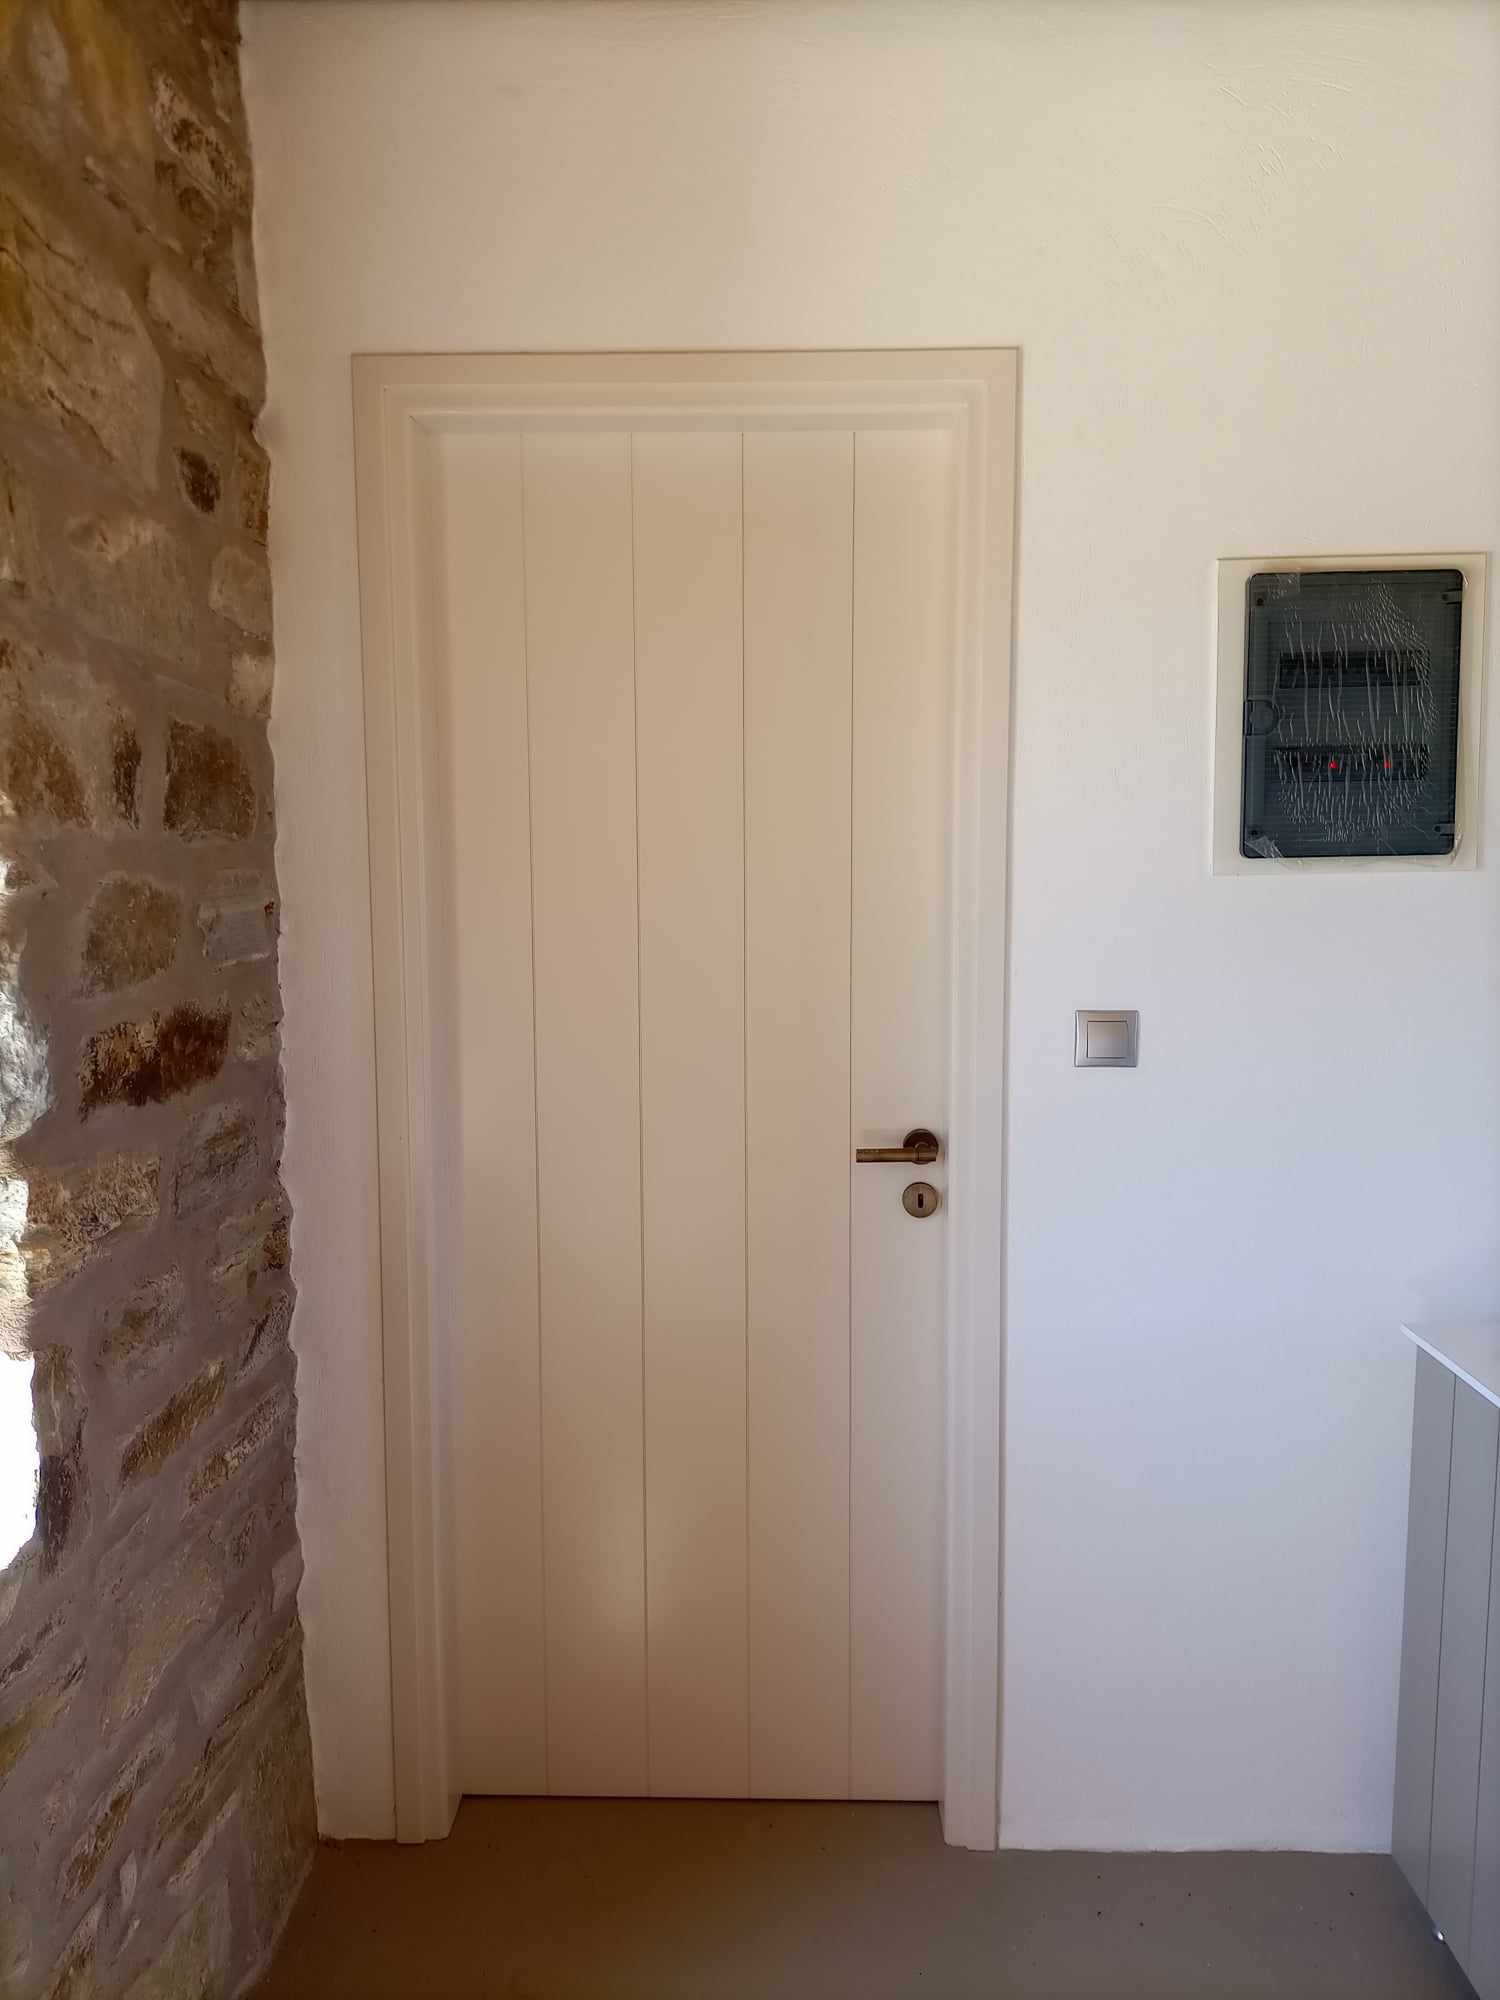 Εσωτερική πρεσσαριστή πόρτα, με σχέδιο ραμποτέ